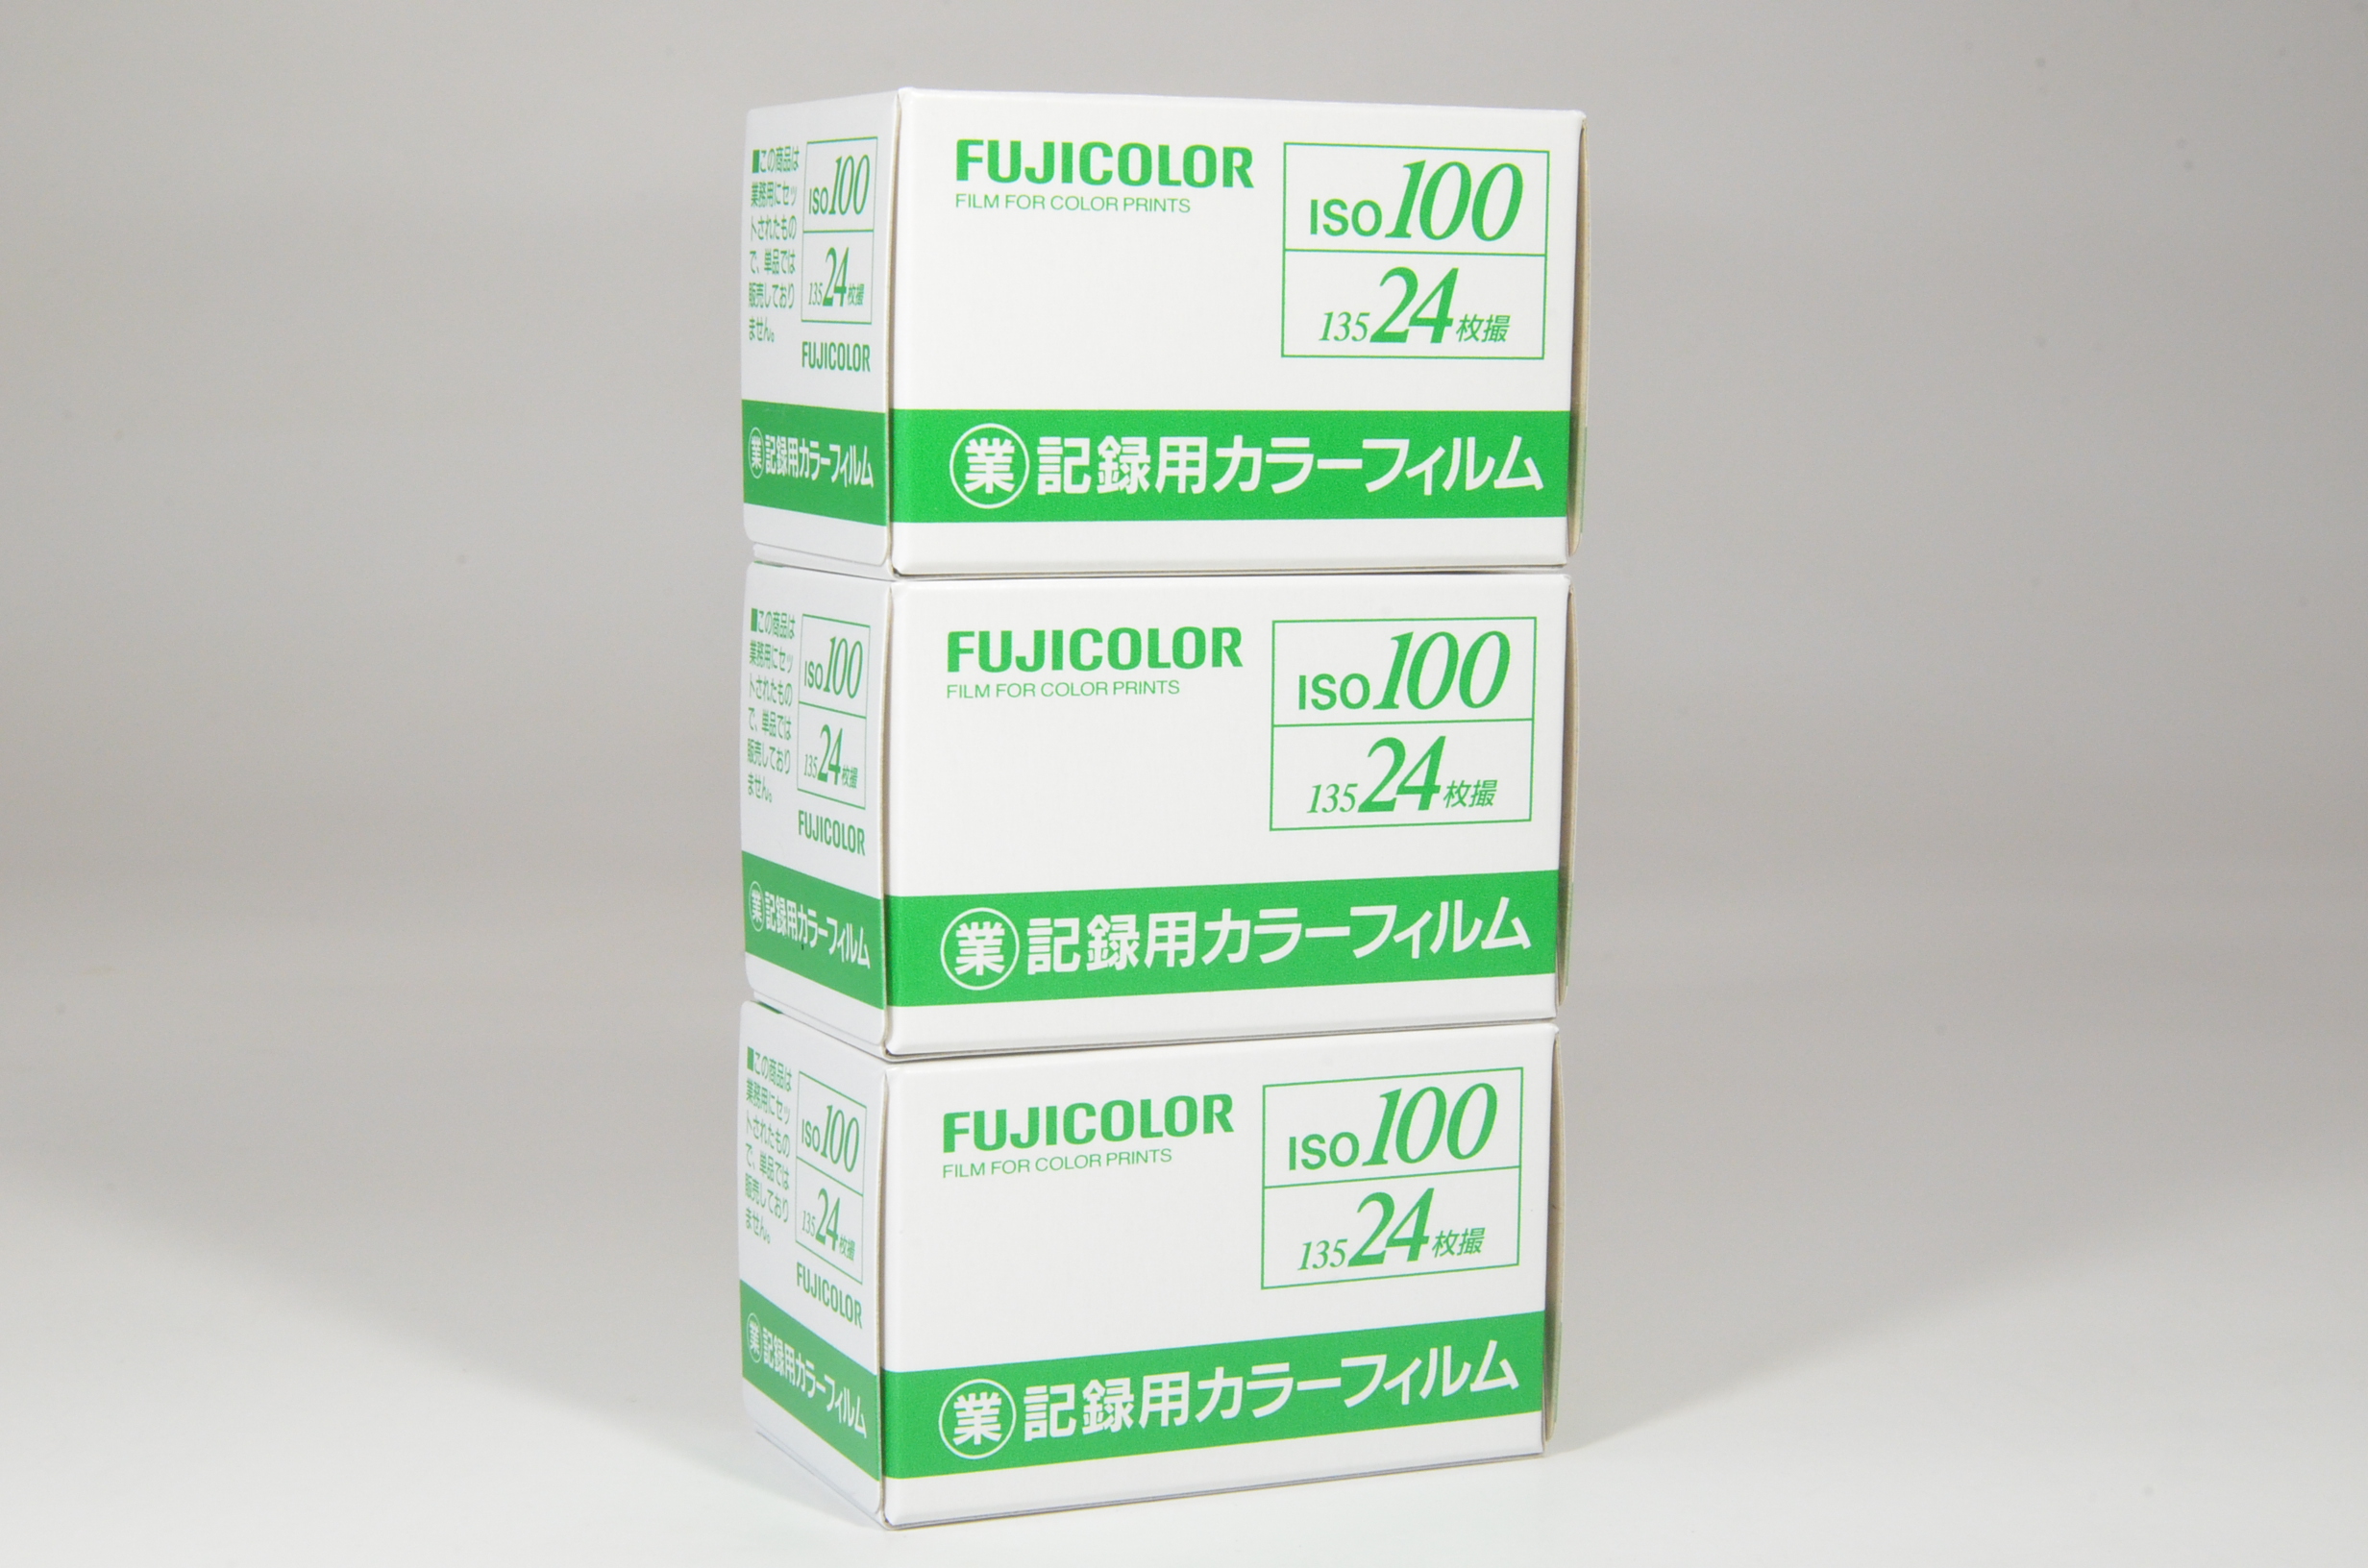 fujifilm fujicolor industrial iso 100 color negative film 24 exp 3 rolls